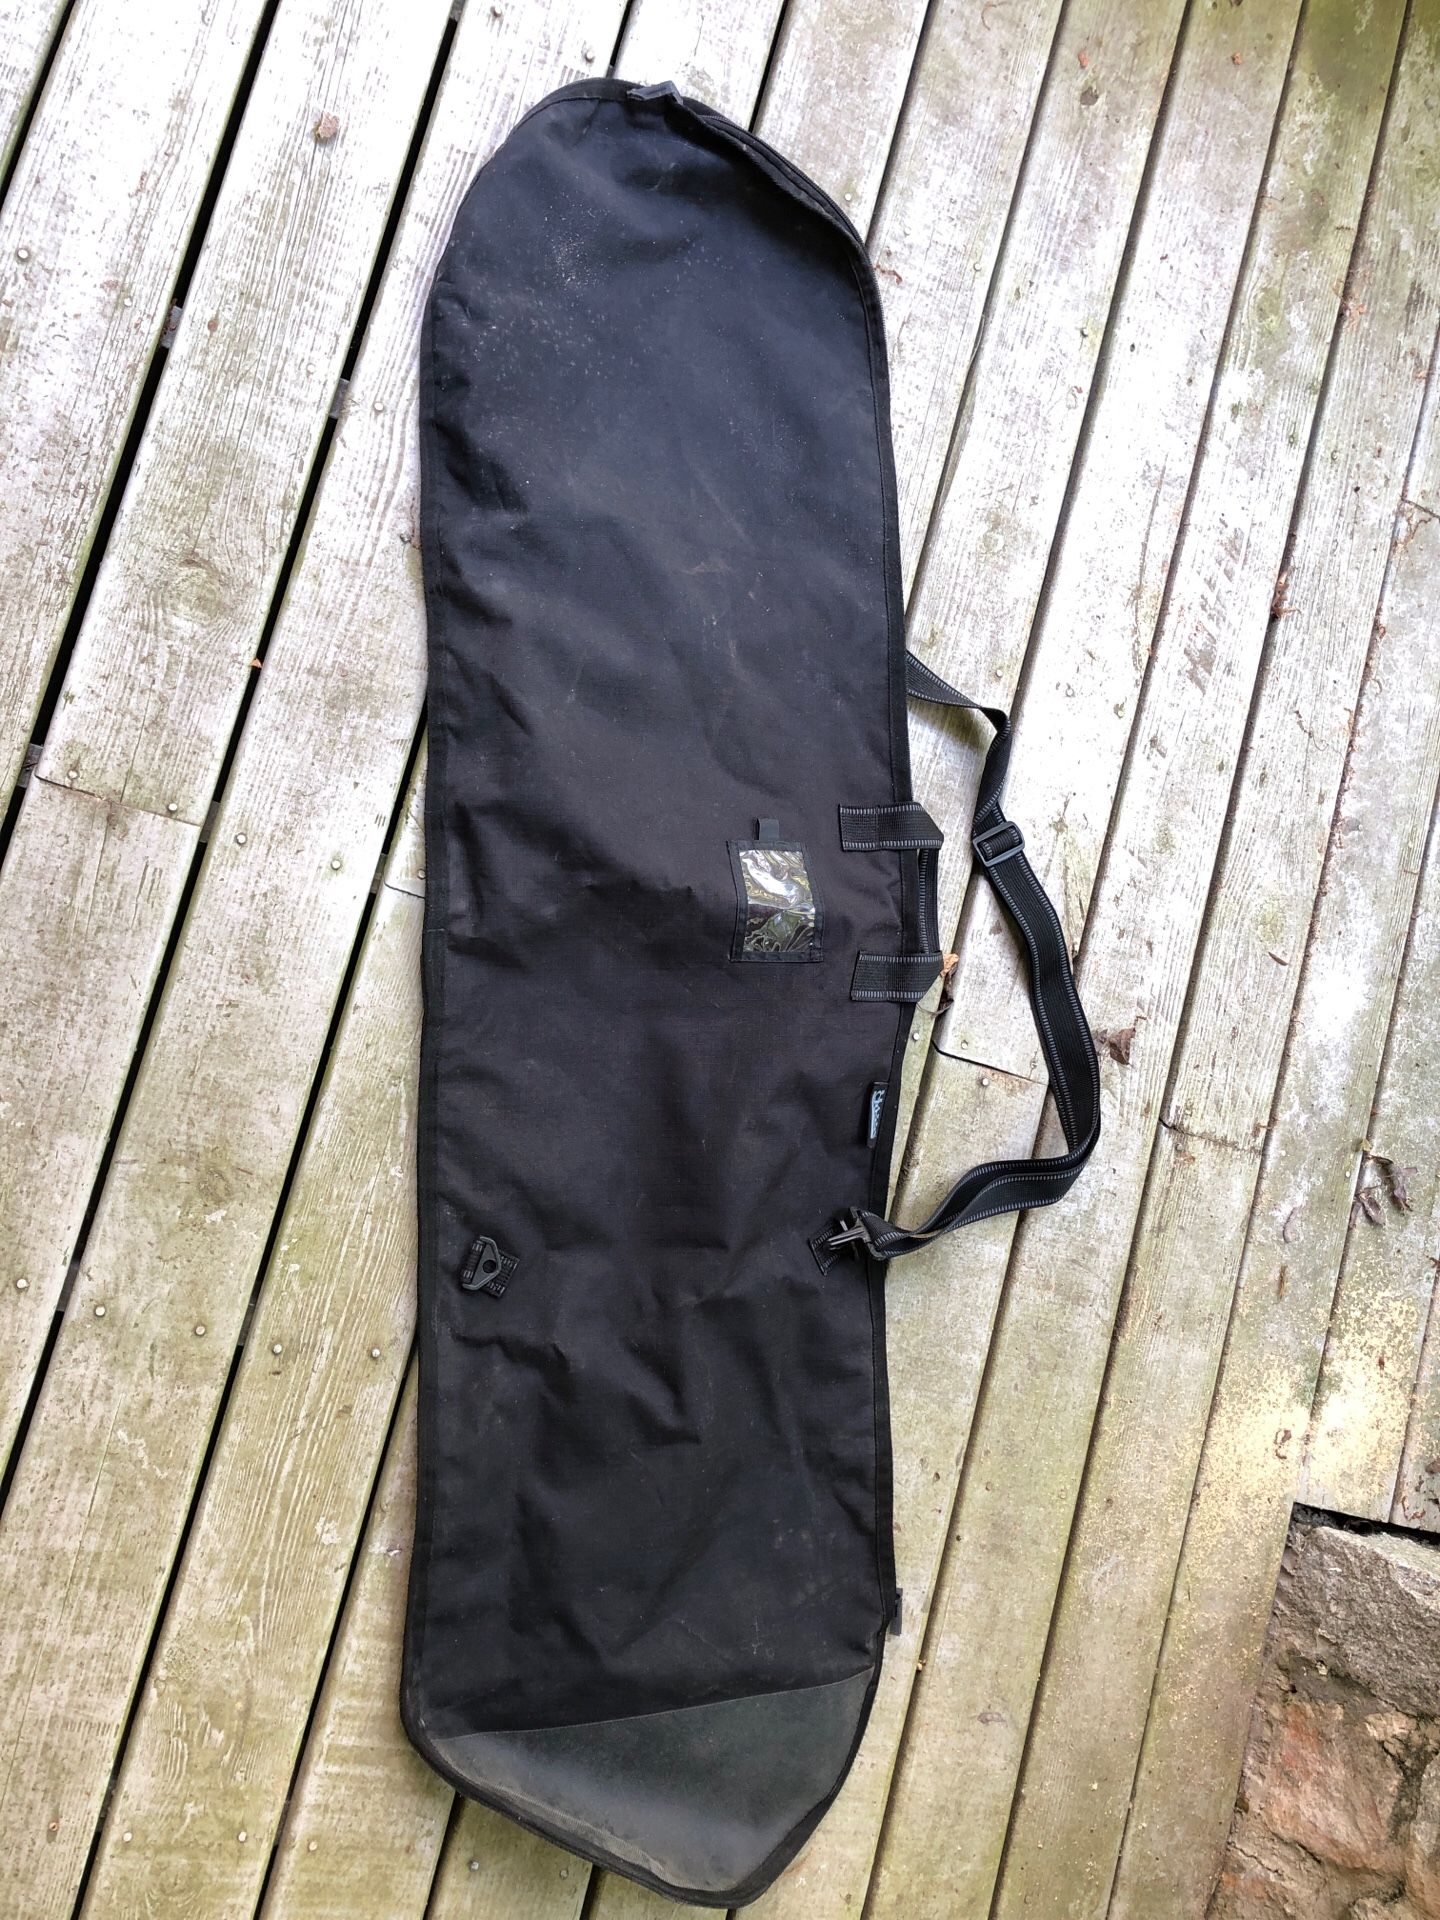 Beaver creek snowboard bag